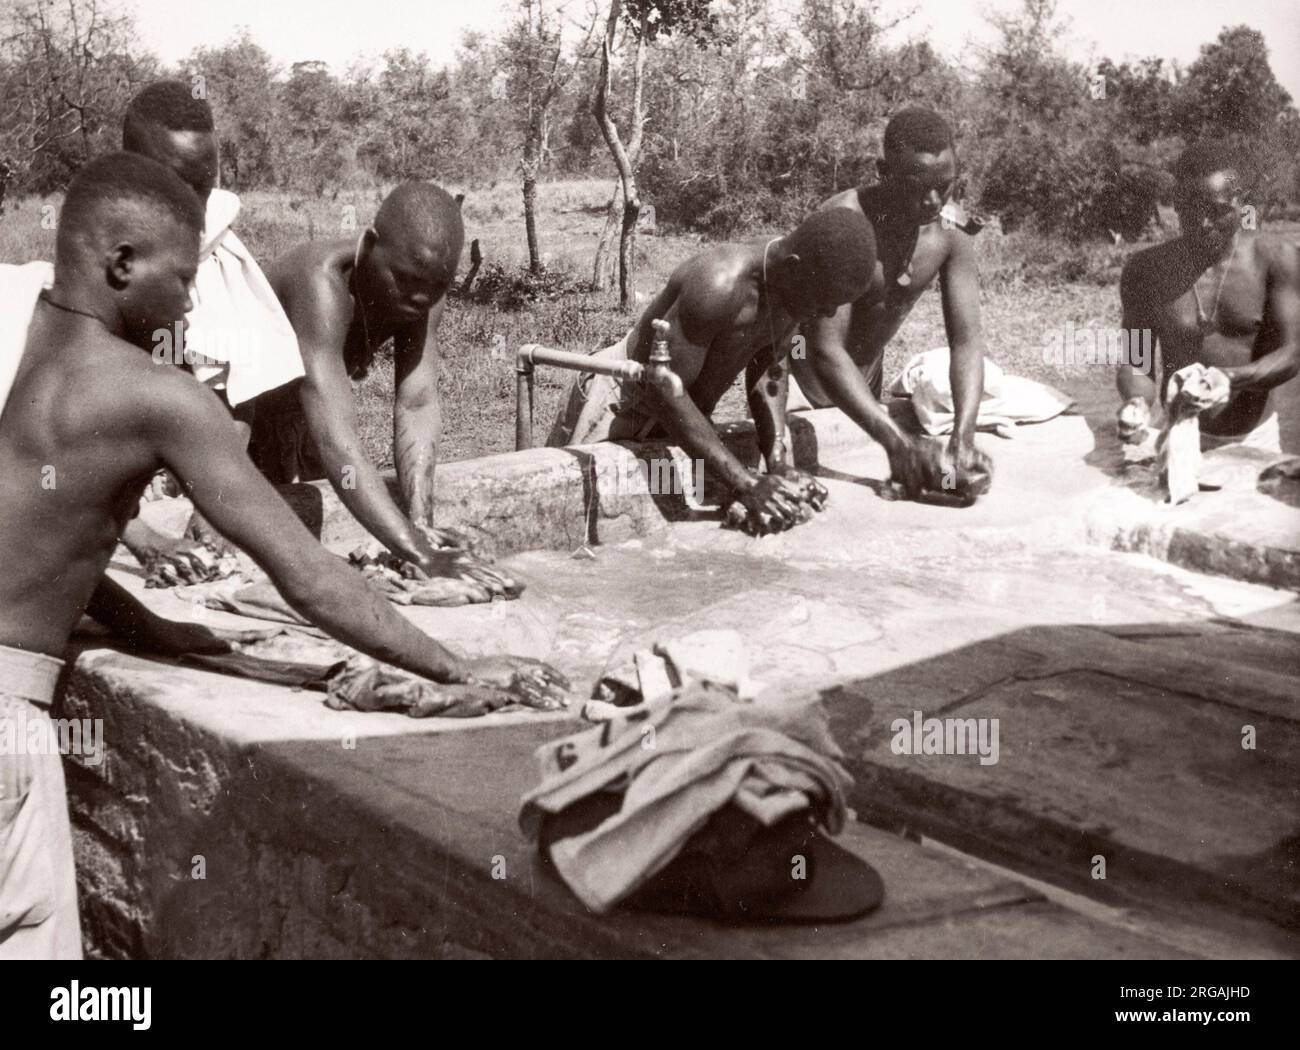 1940s Ostafrika - askari-Soldaten waschen Kleidung Foto von einem britischen Armee Rekrutierungsoffizier in Ostafrika und dem Nahen Osten während des Zweiten Weltkriegs stationiert Stockfoto